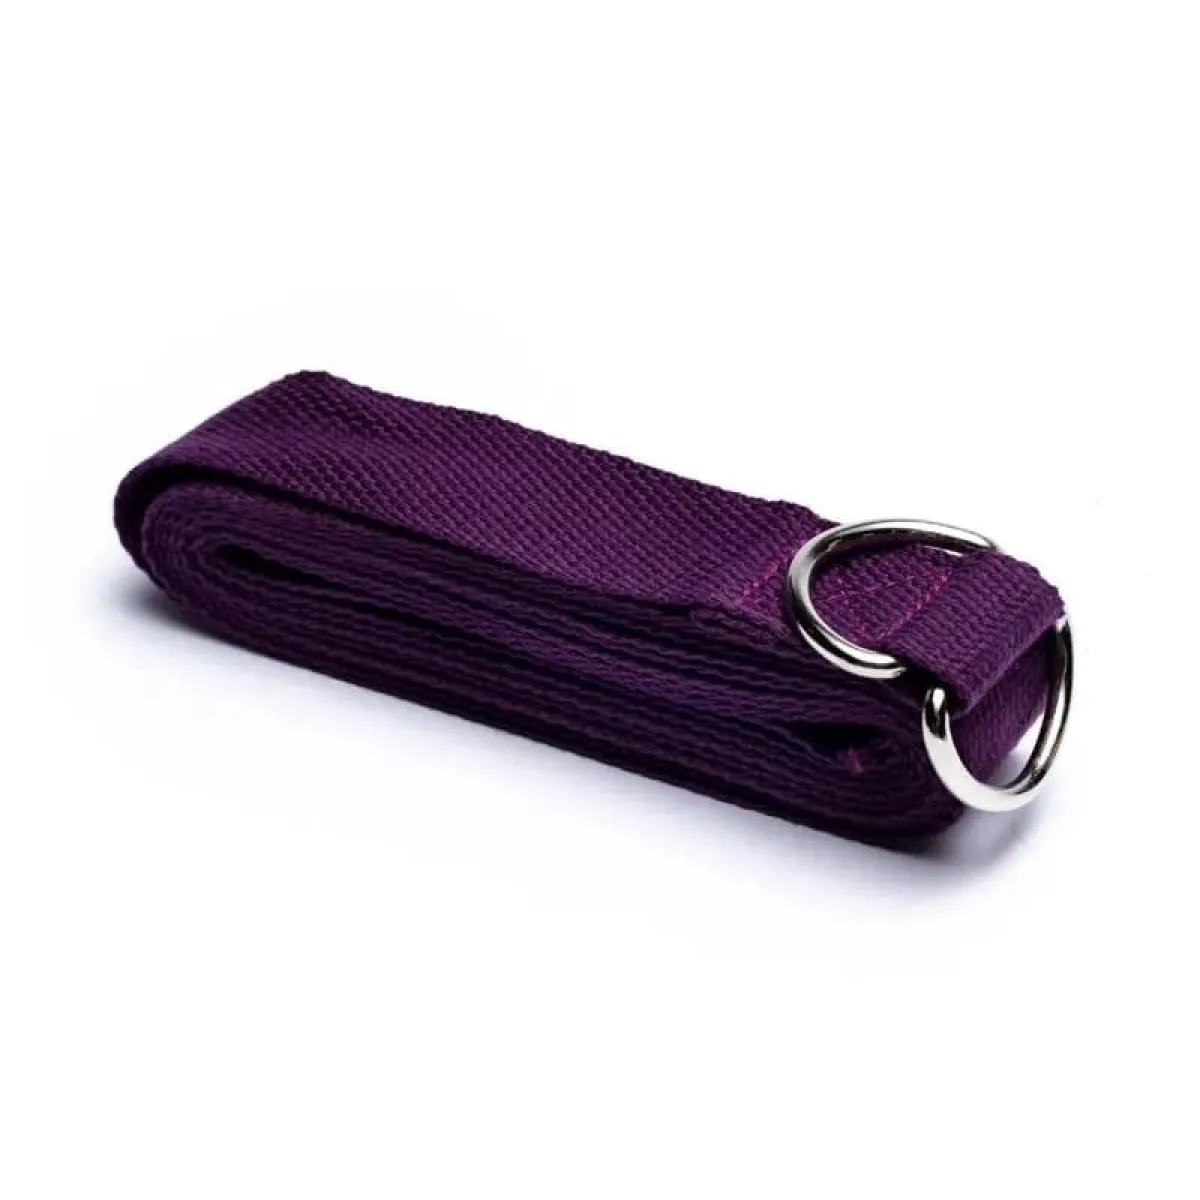 Ceinture/ruban de yoga violet 250x3 cm